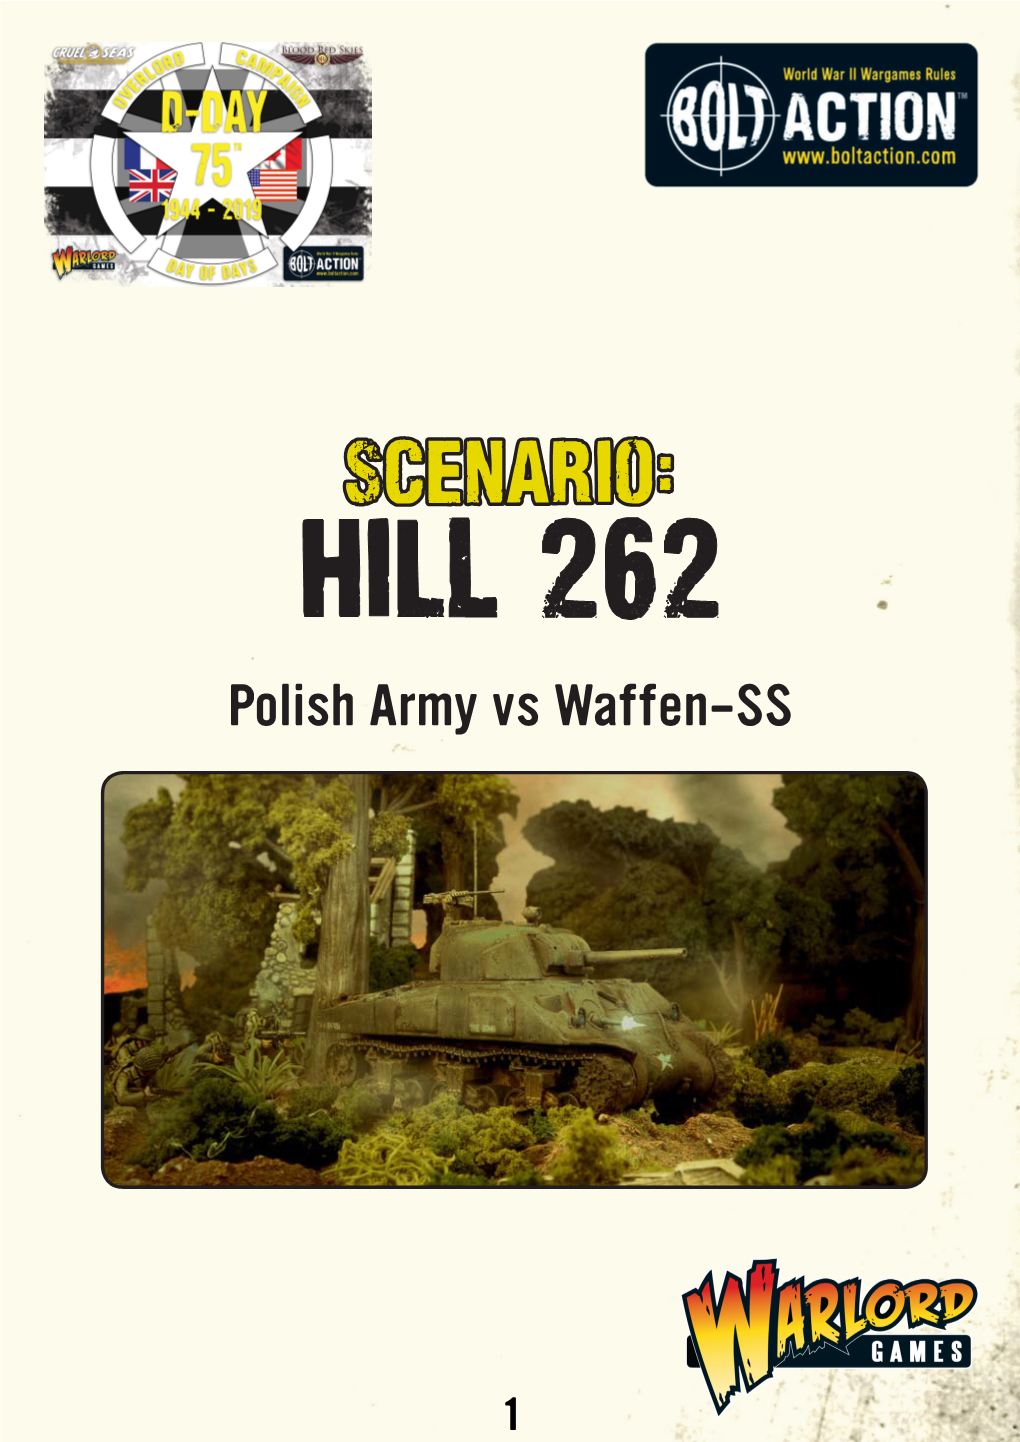 Scenario: Hill 262